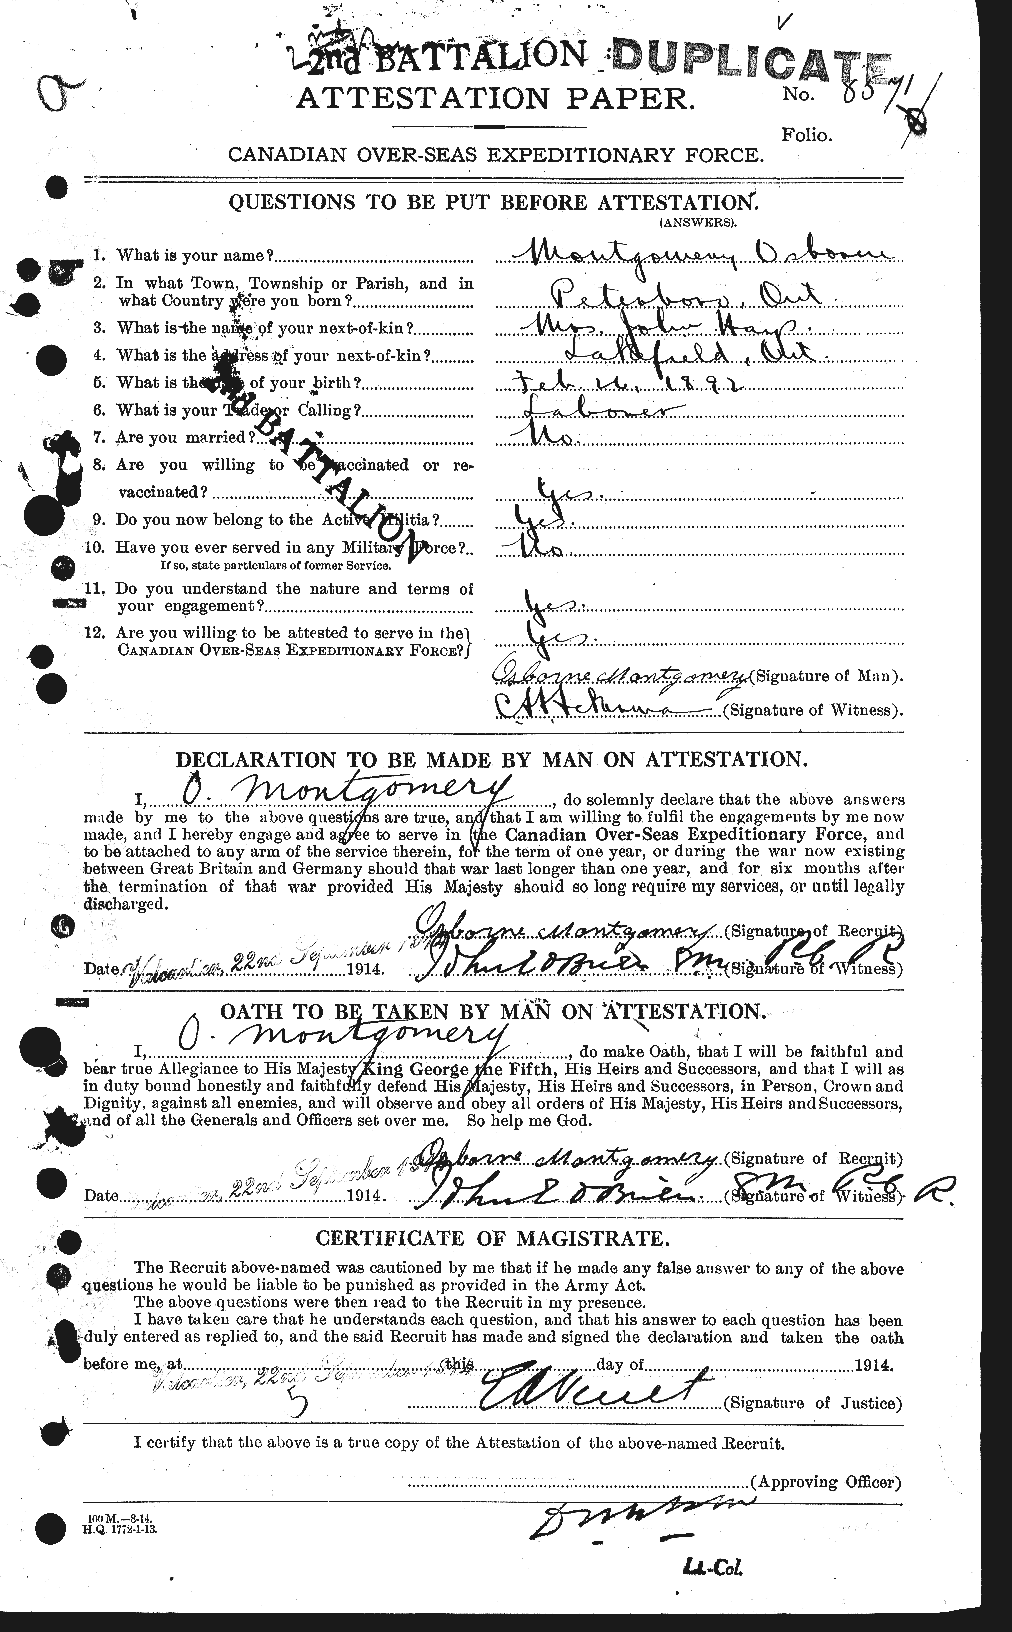 Dossiers du Personnel de la Première Guerre mondiale - CEC 504534a